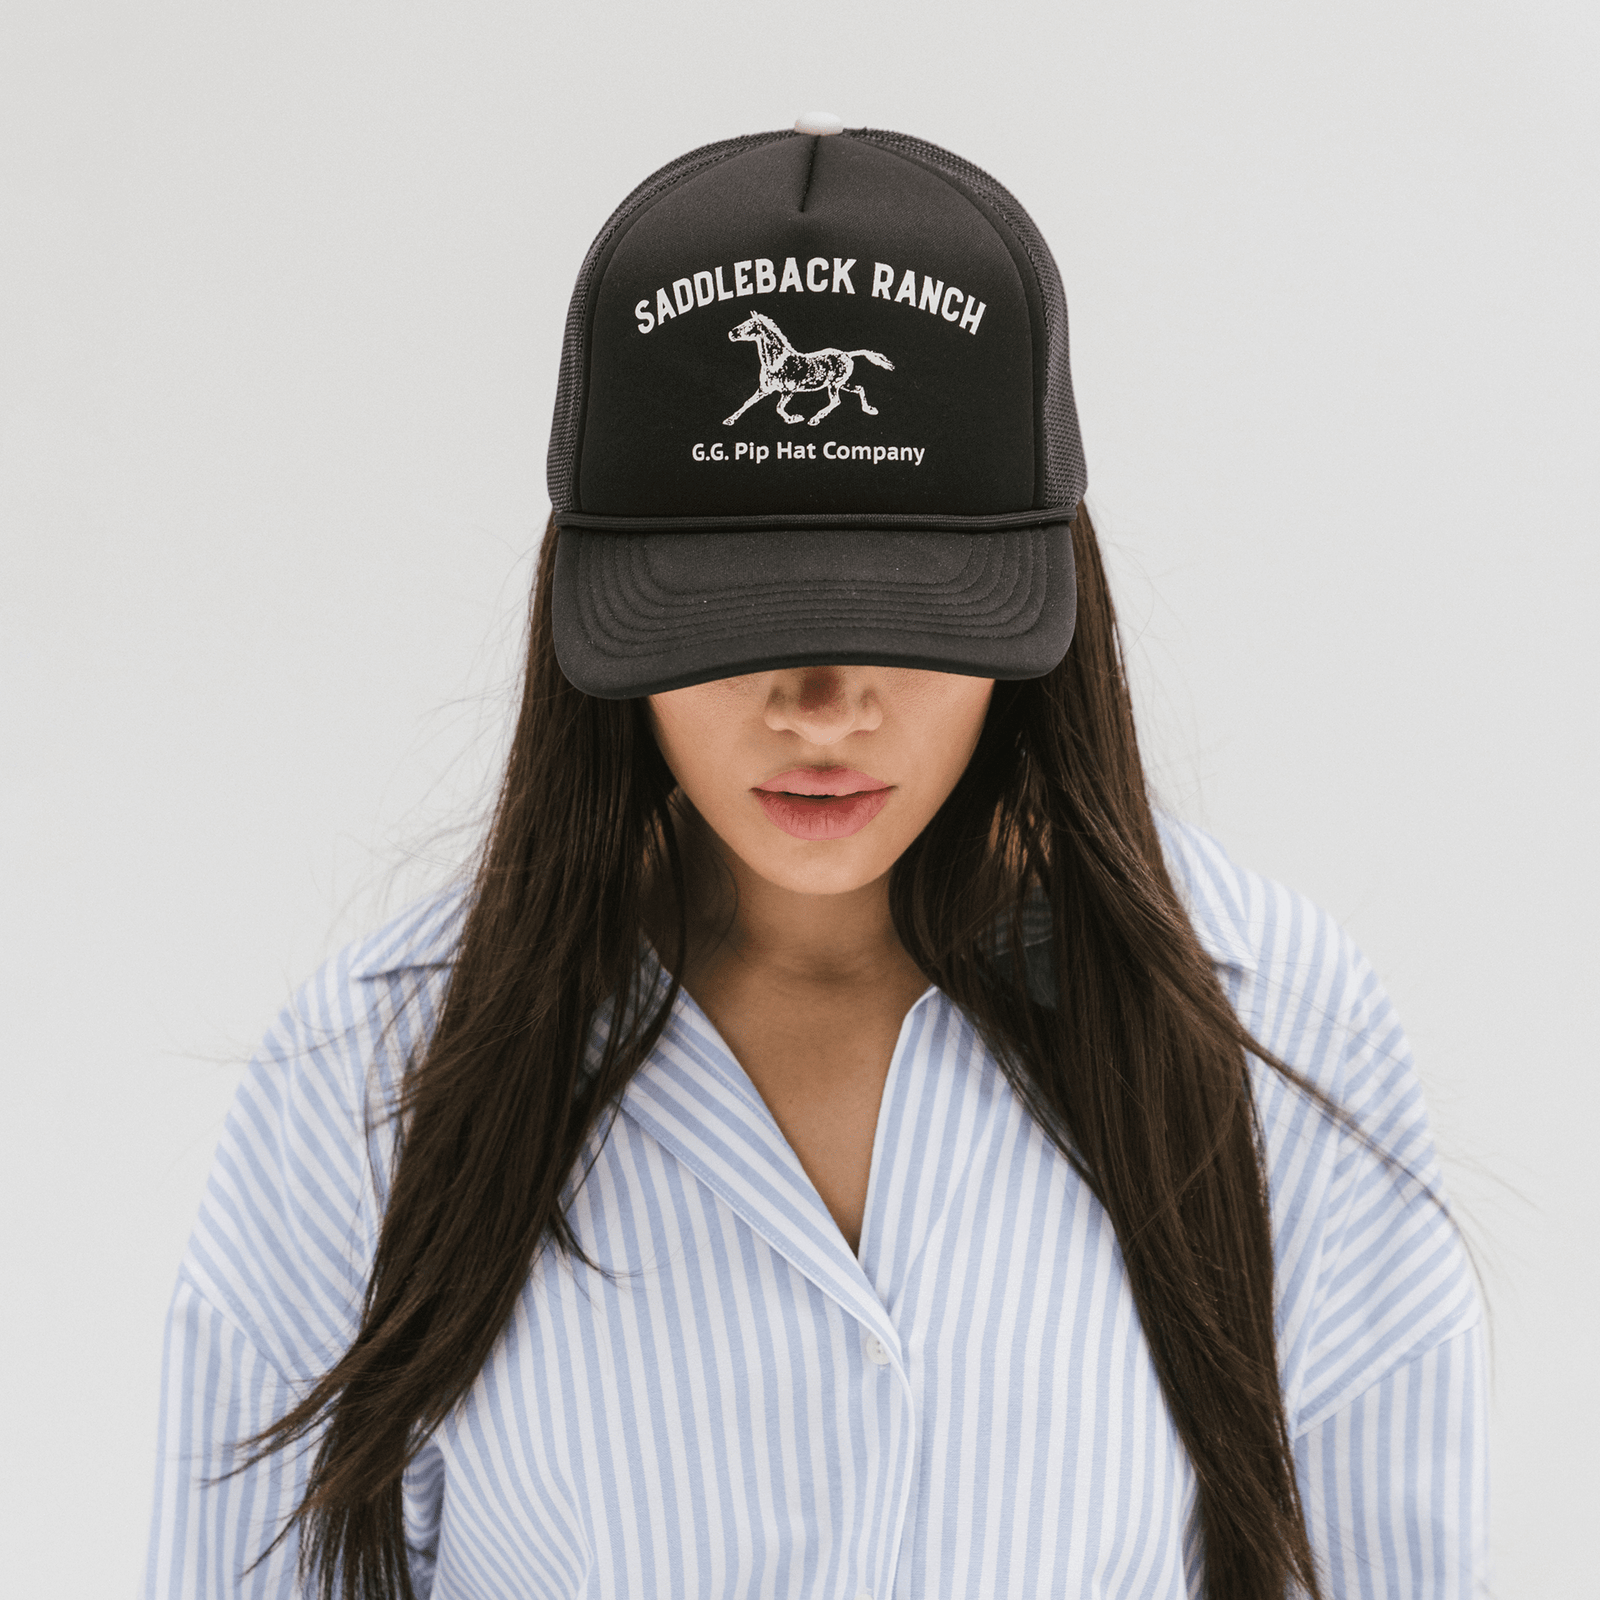 Find The Best Trucker Hats for Women at Gigi Pip! - GIGI PIP